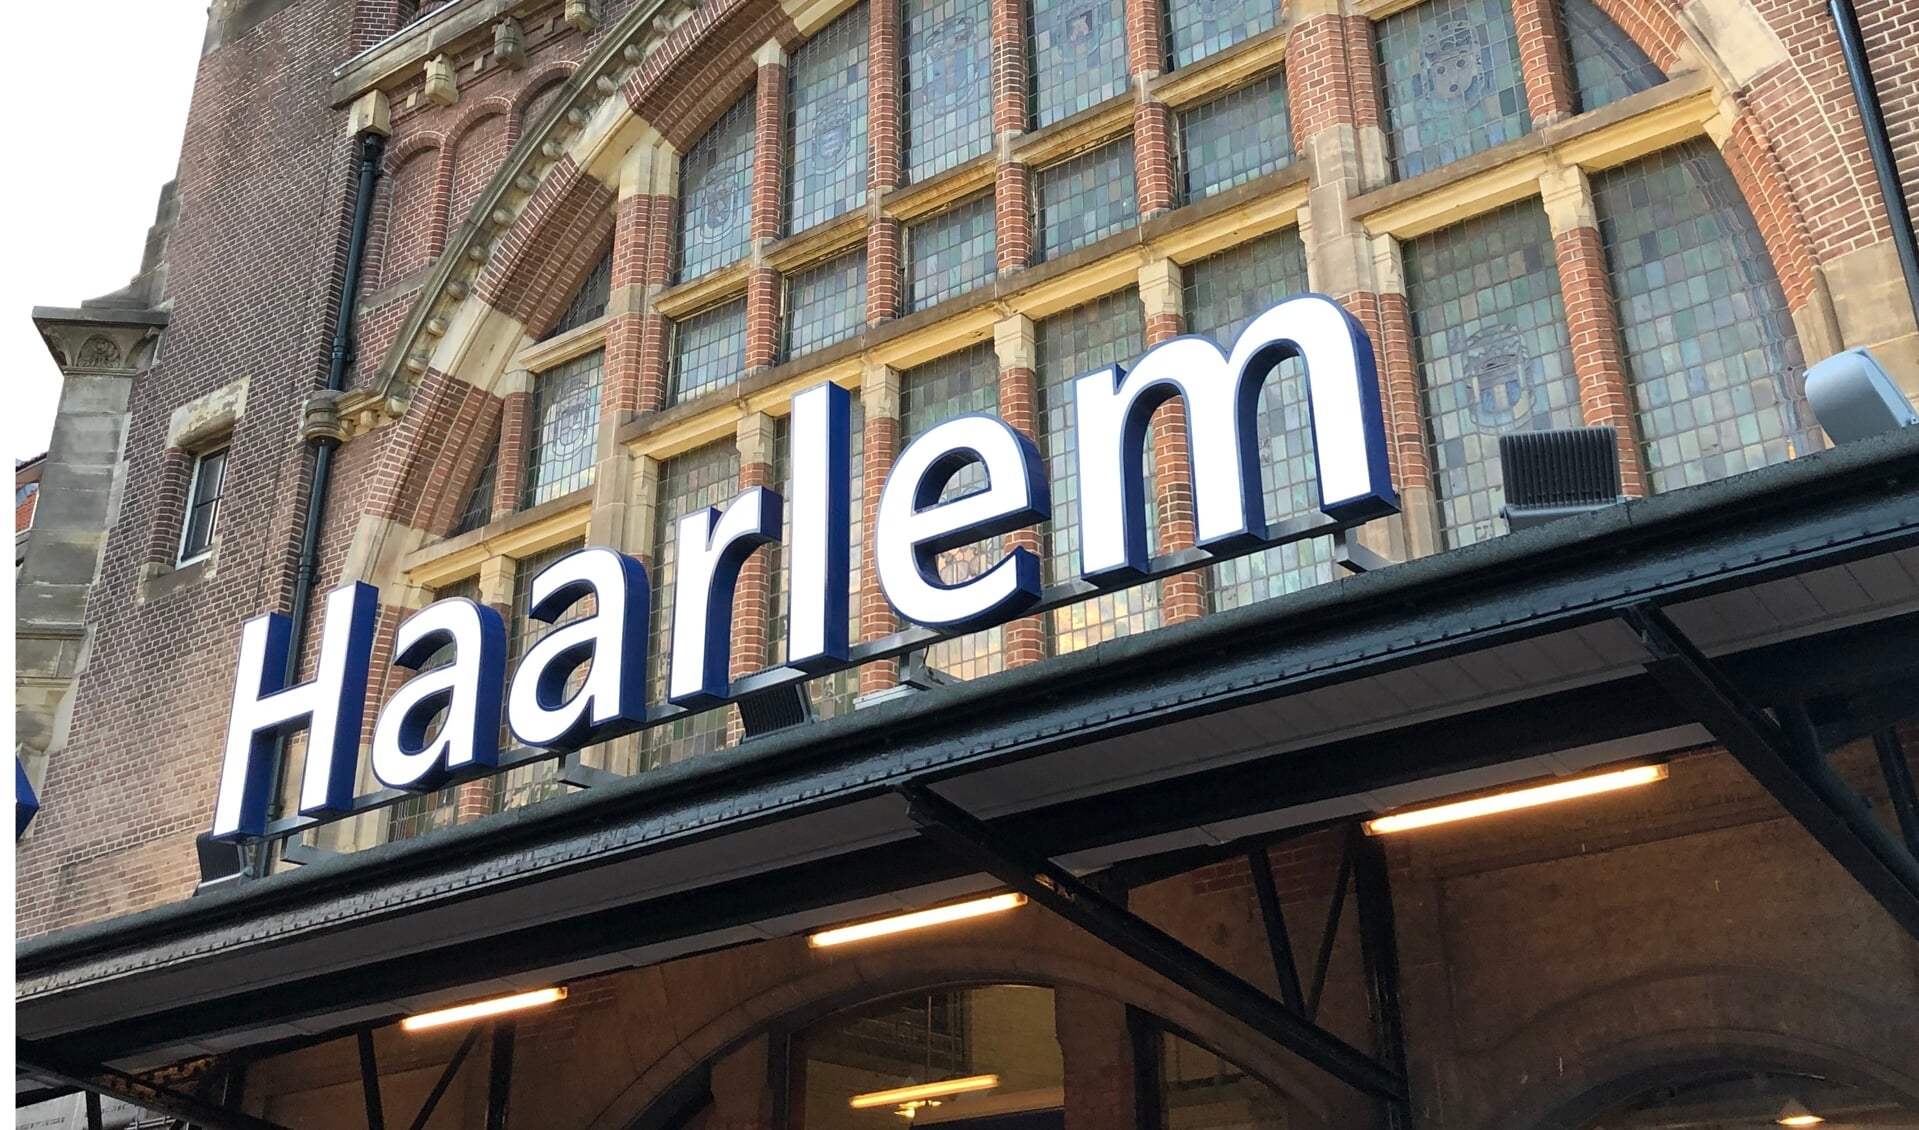 Nachttrein Haarlem rijdt nog tot 2025